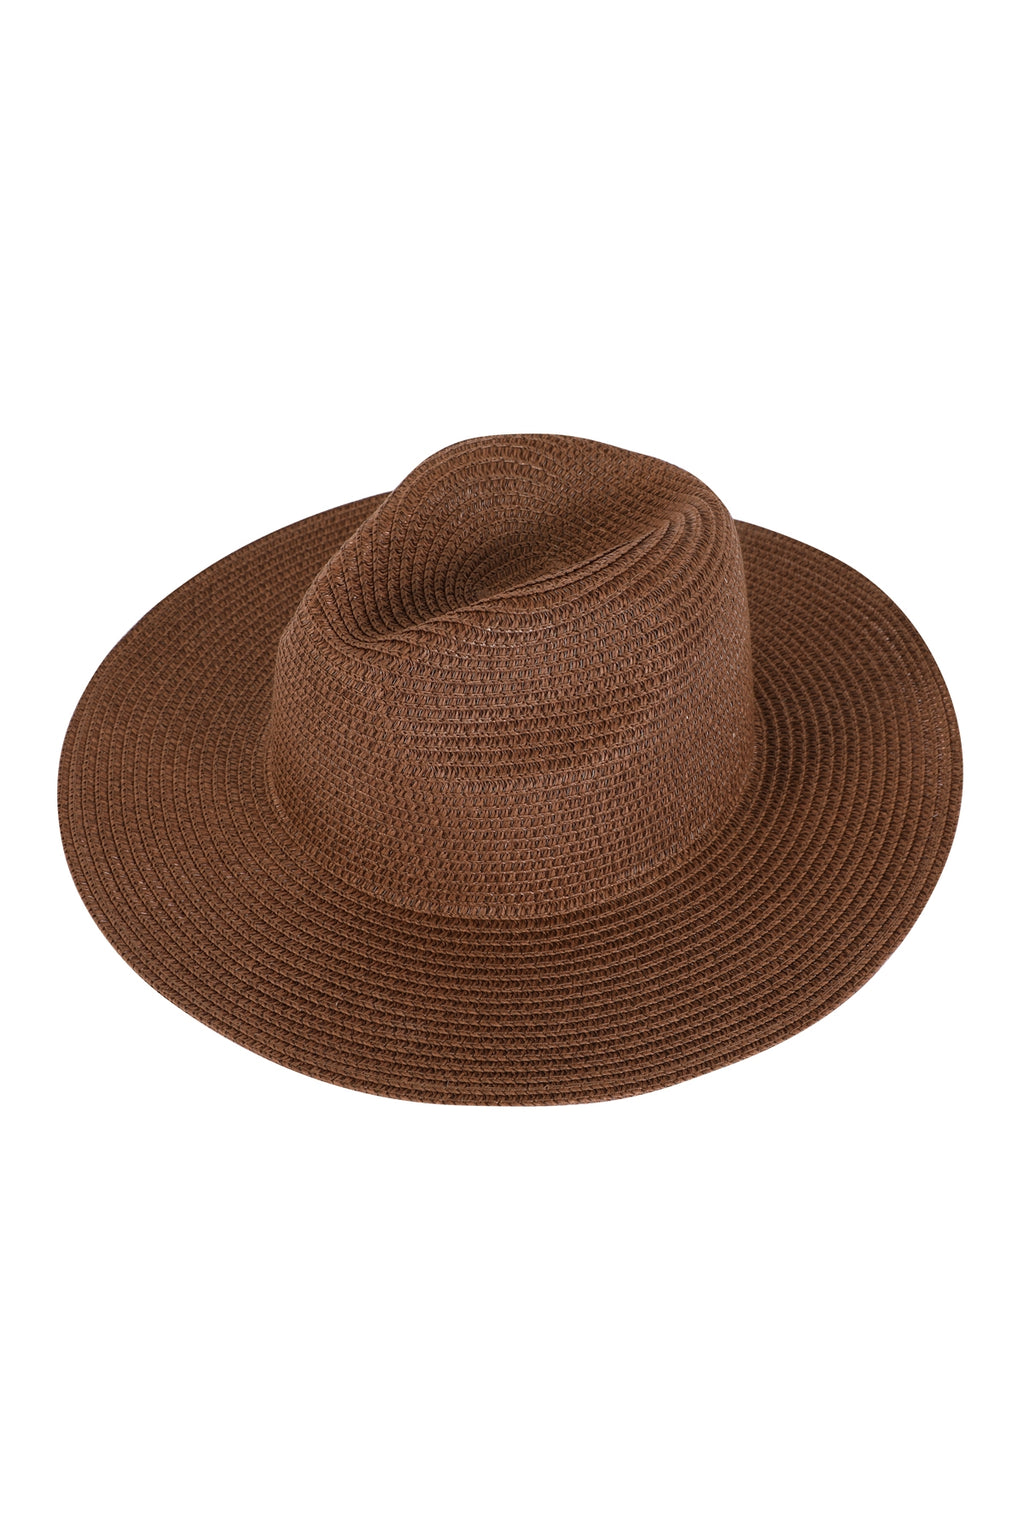 Classic Panama Brim Summer Hat Brown - Pack of 6